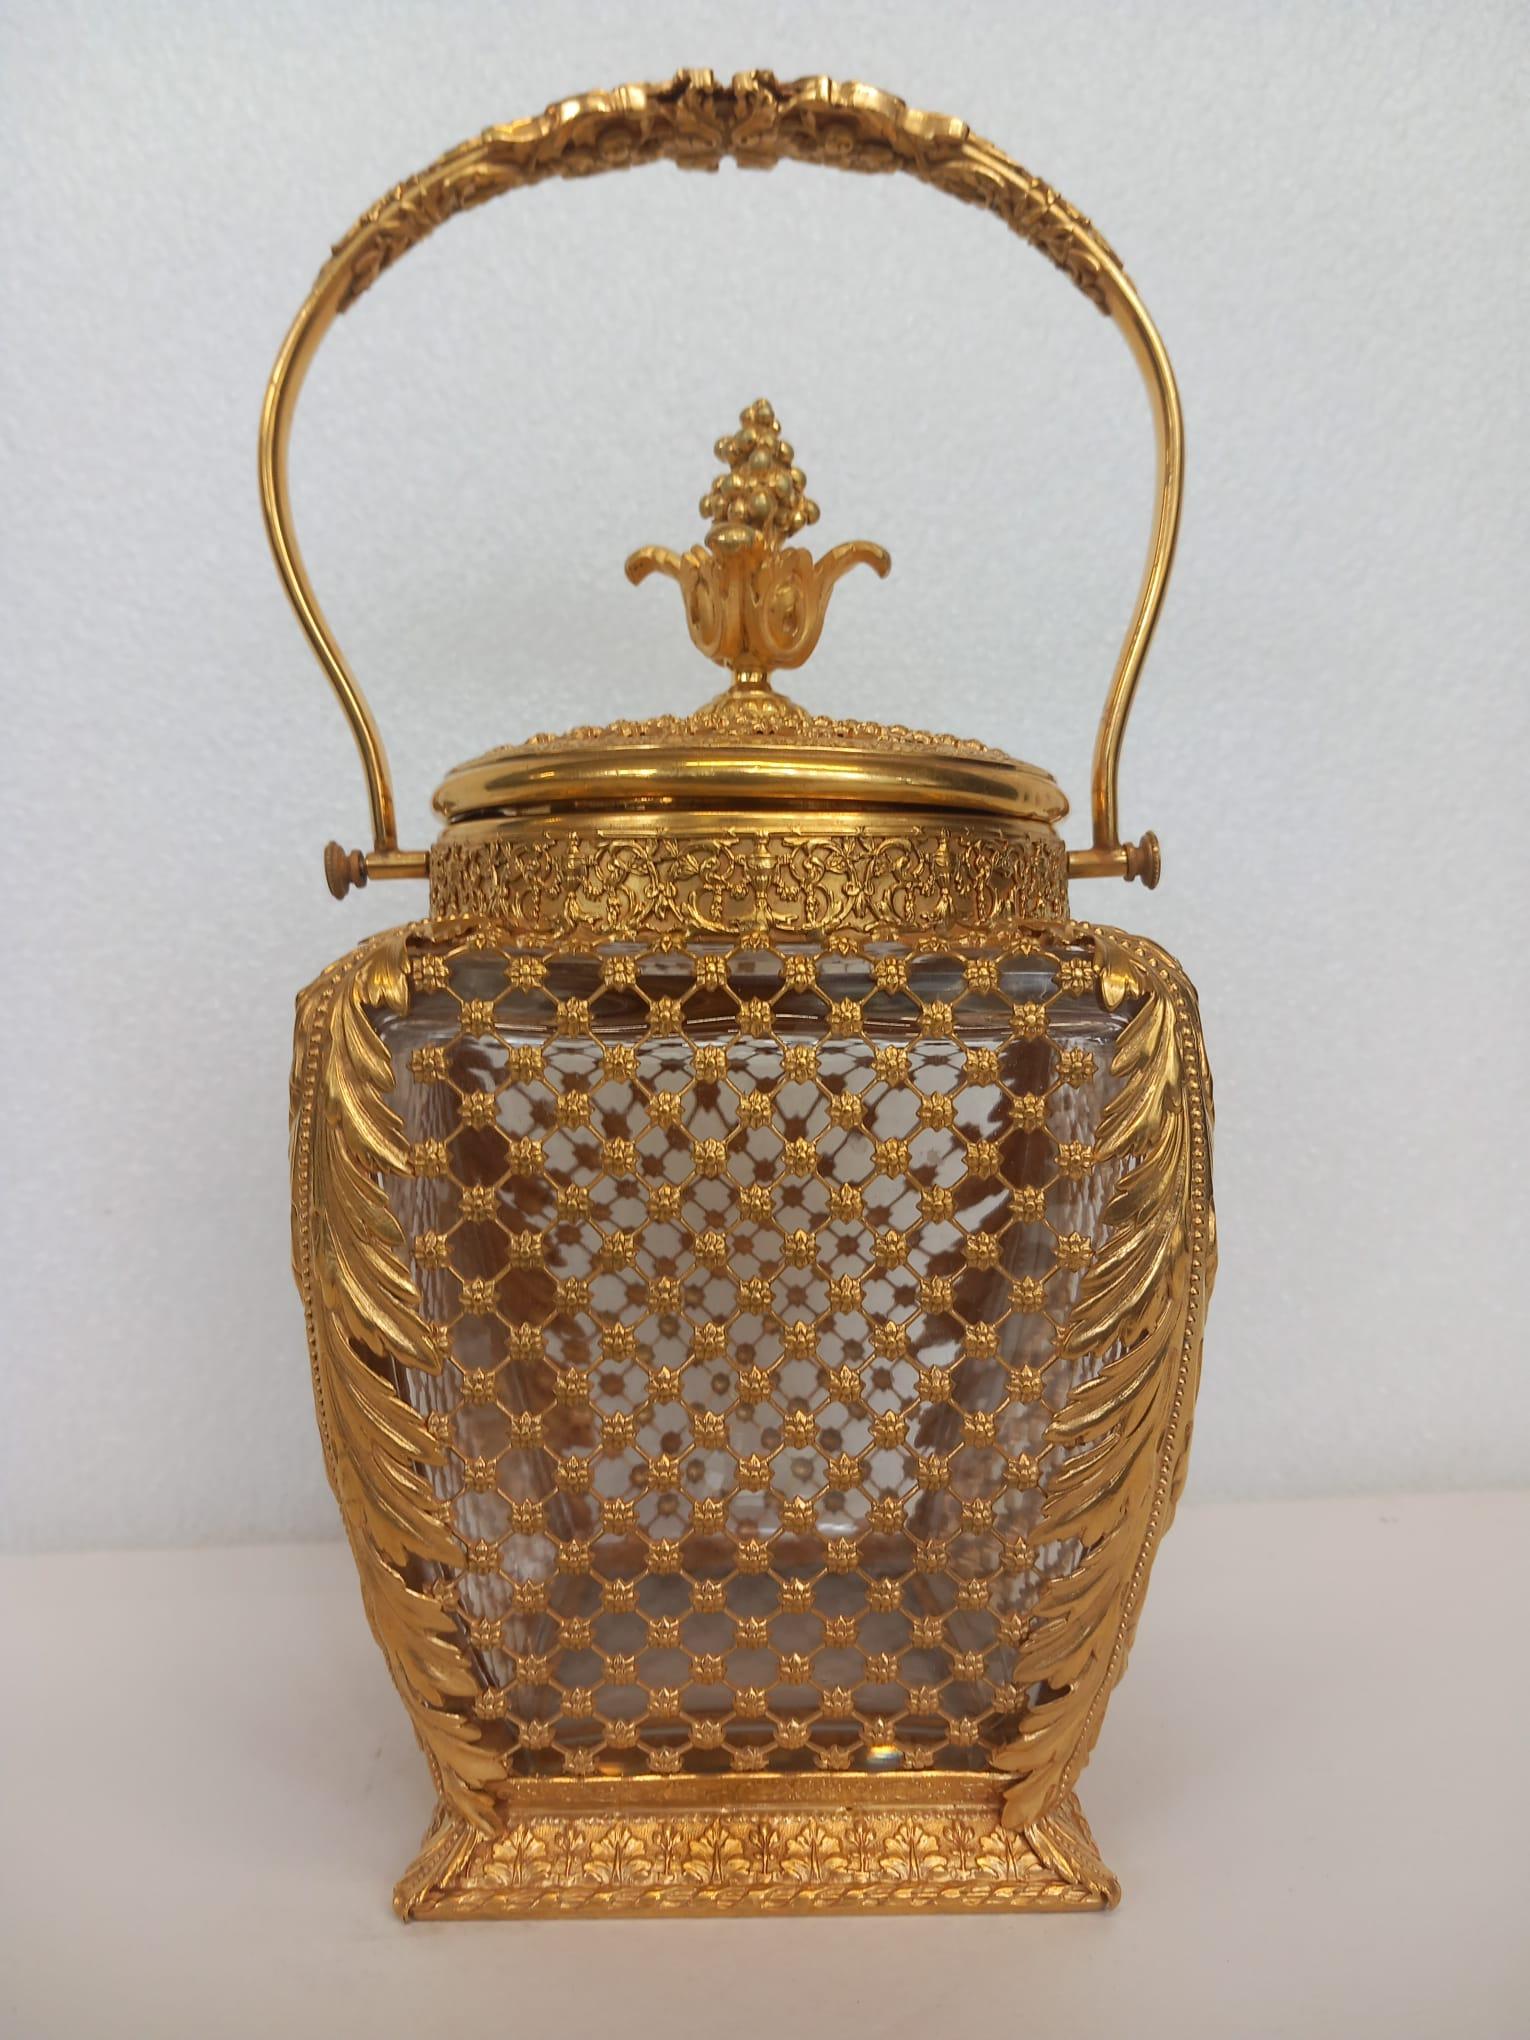 Eine antike französische Keksdose oder ein Eiskübel aus Glas und Ormolu, der Körper aus vergoldeter Bronze, verziert mit einem Rokokomuster aus Blumen und Akanthusblättern an den Seiten, mit einem Deckel und einem Griff aus Ormolu.
Frankreich um 1880